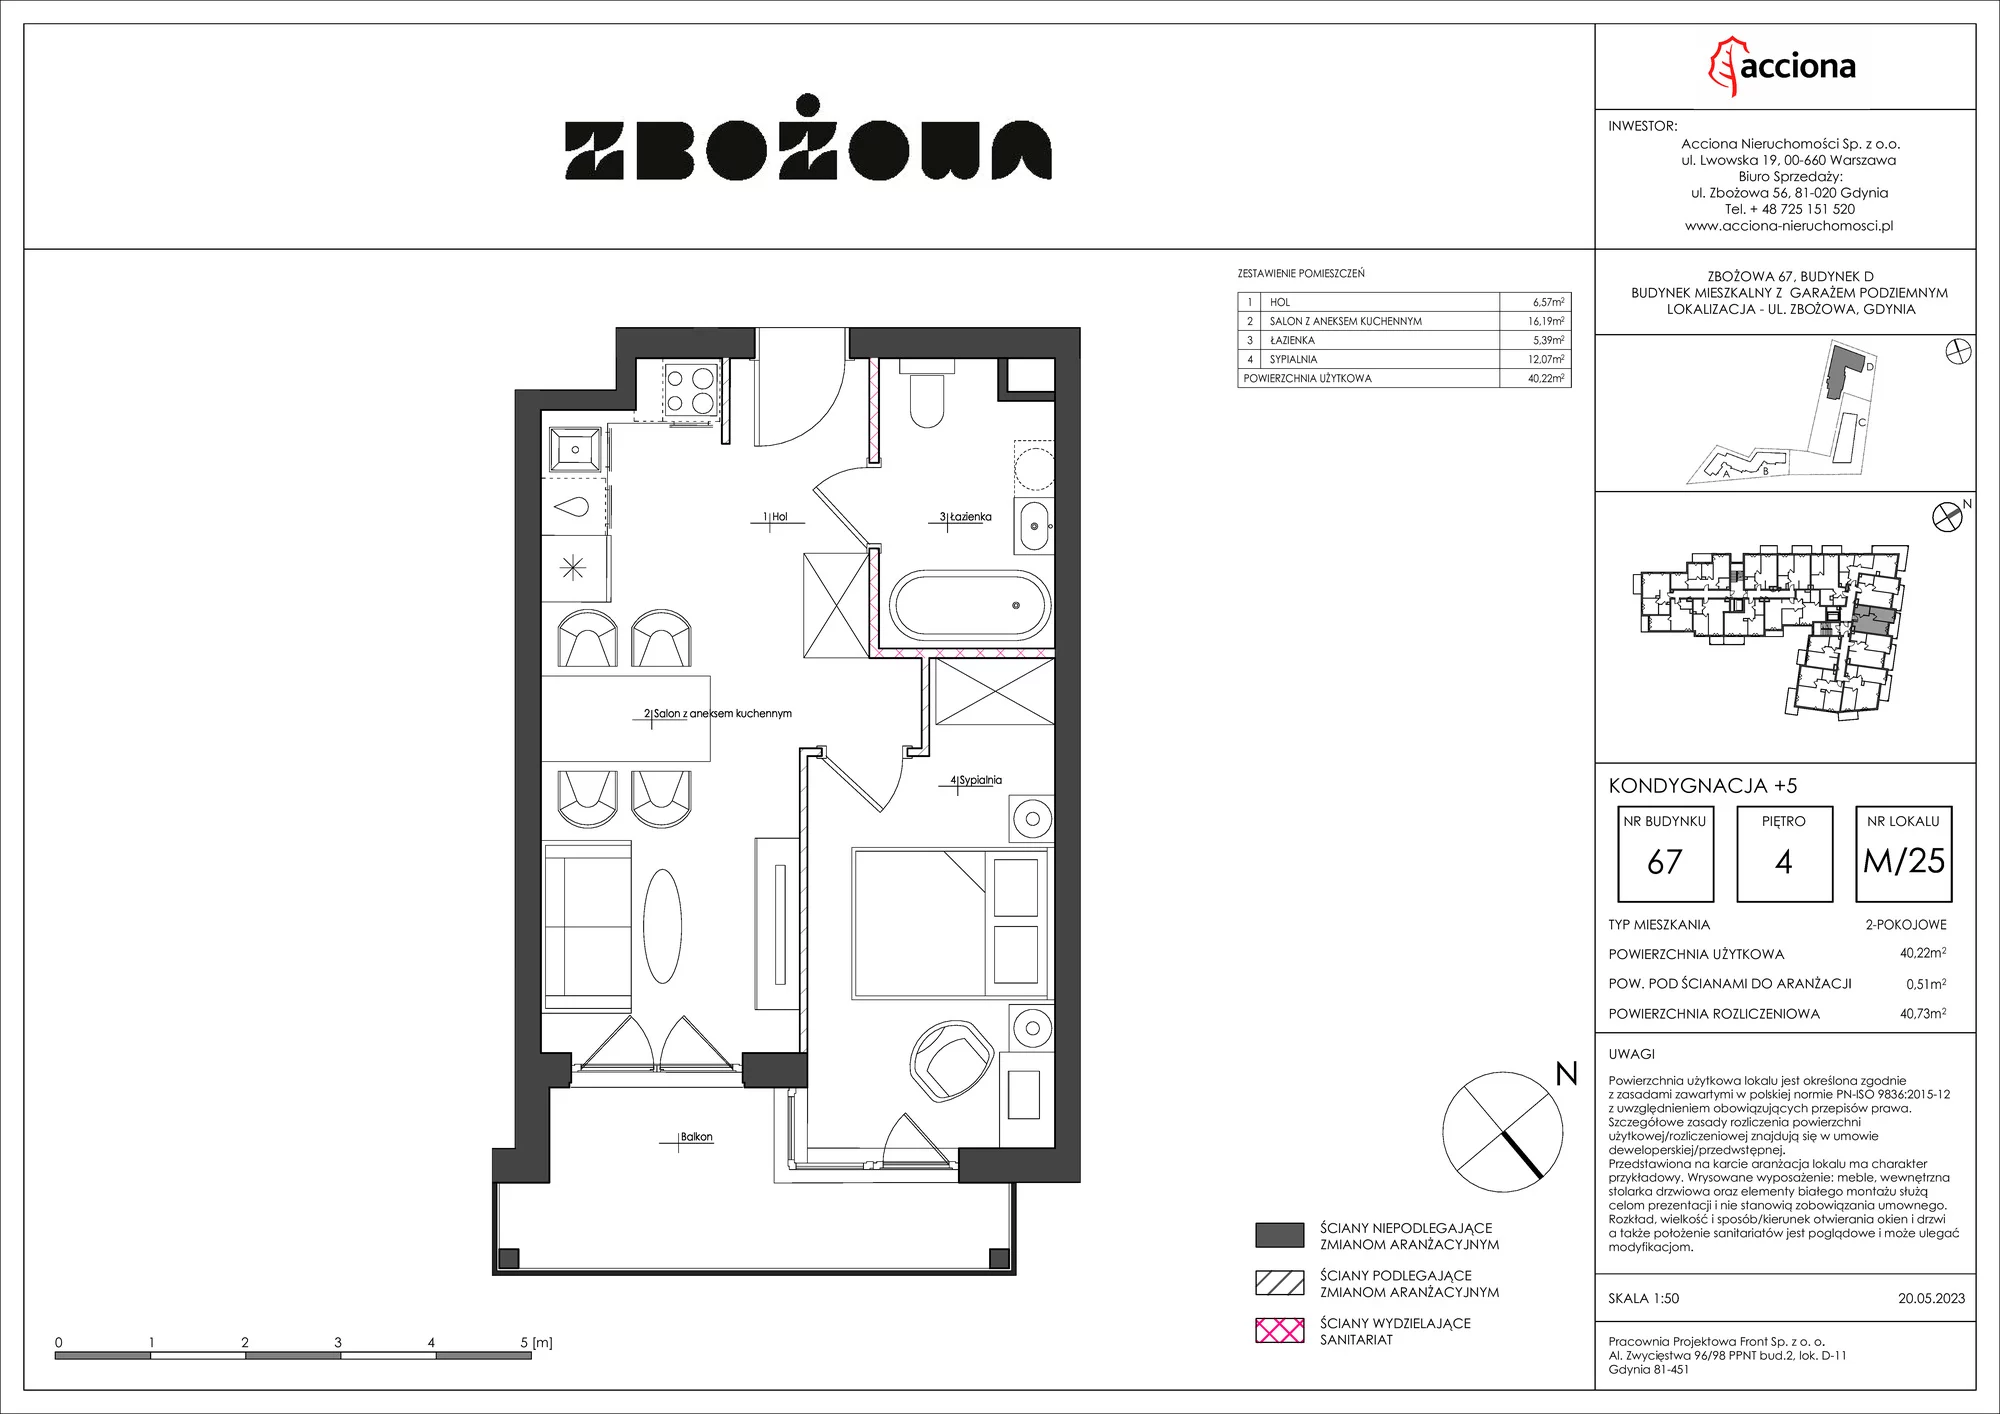 Mieszkanie 40,73 m², piętro 4, oferta nr 67.25, Zbożowa, Gdynia, Cisowa, ul. Zbożowa